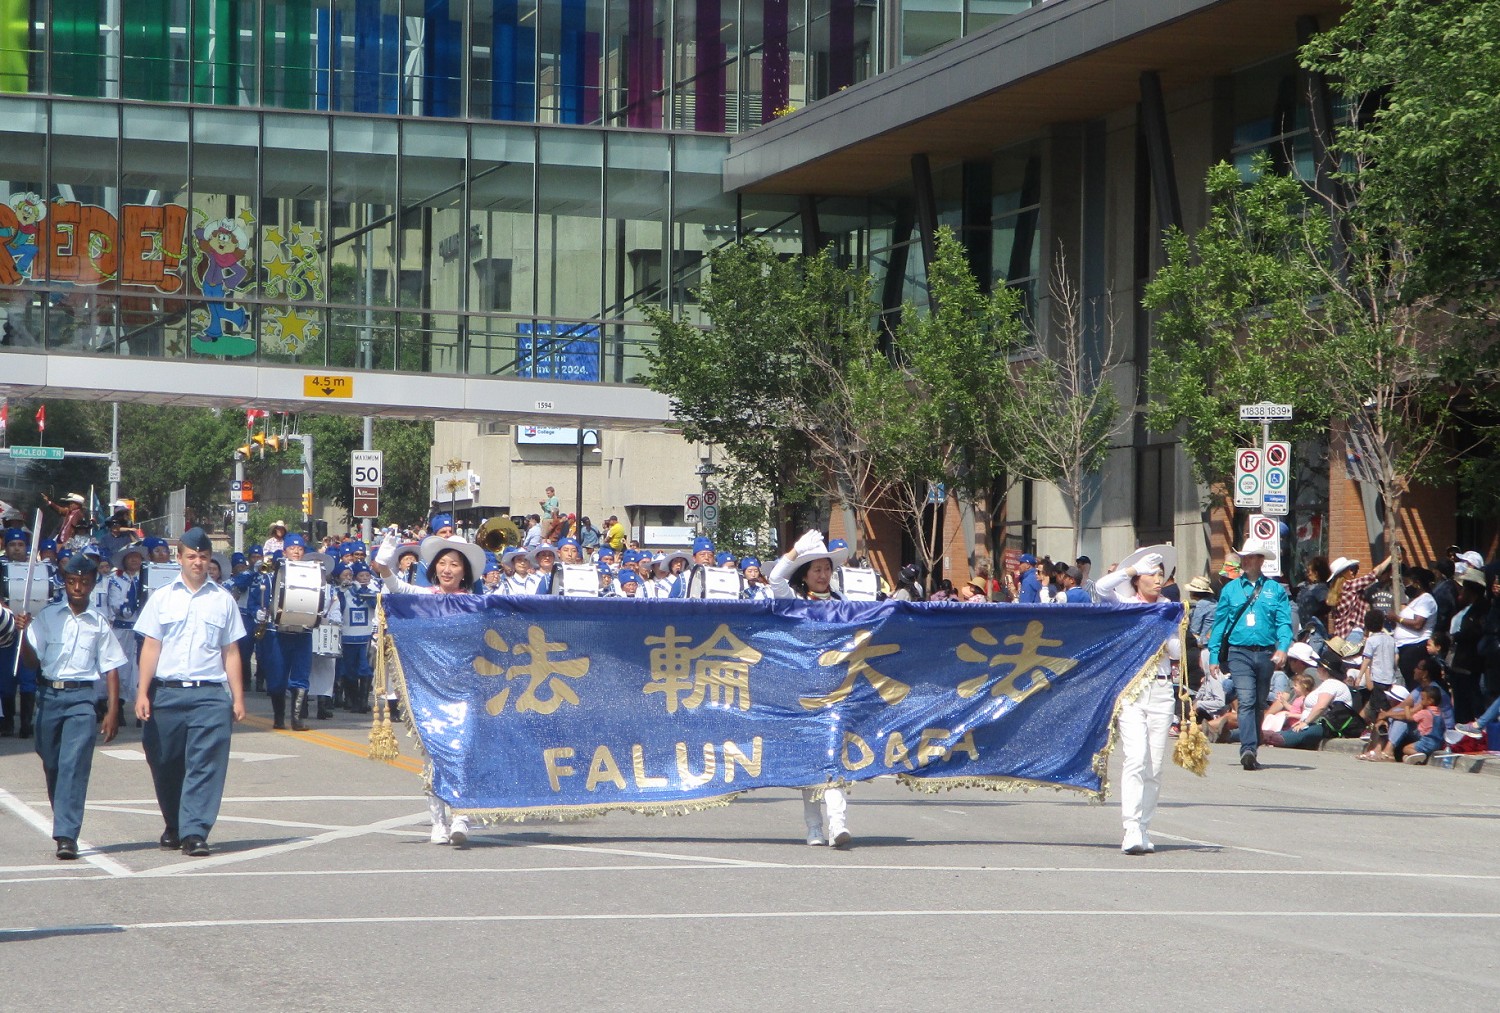 Image for article Canada : Les spectateurs apprécient la présence du Falun Dafa dans le défilé du Stampede de Calgary